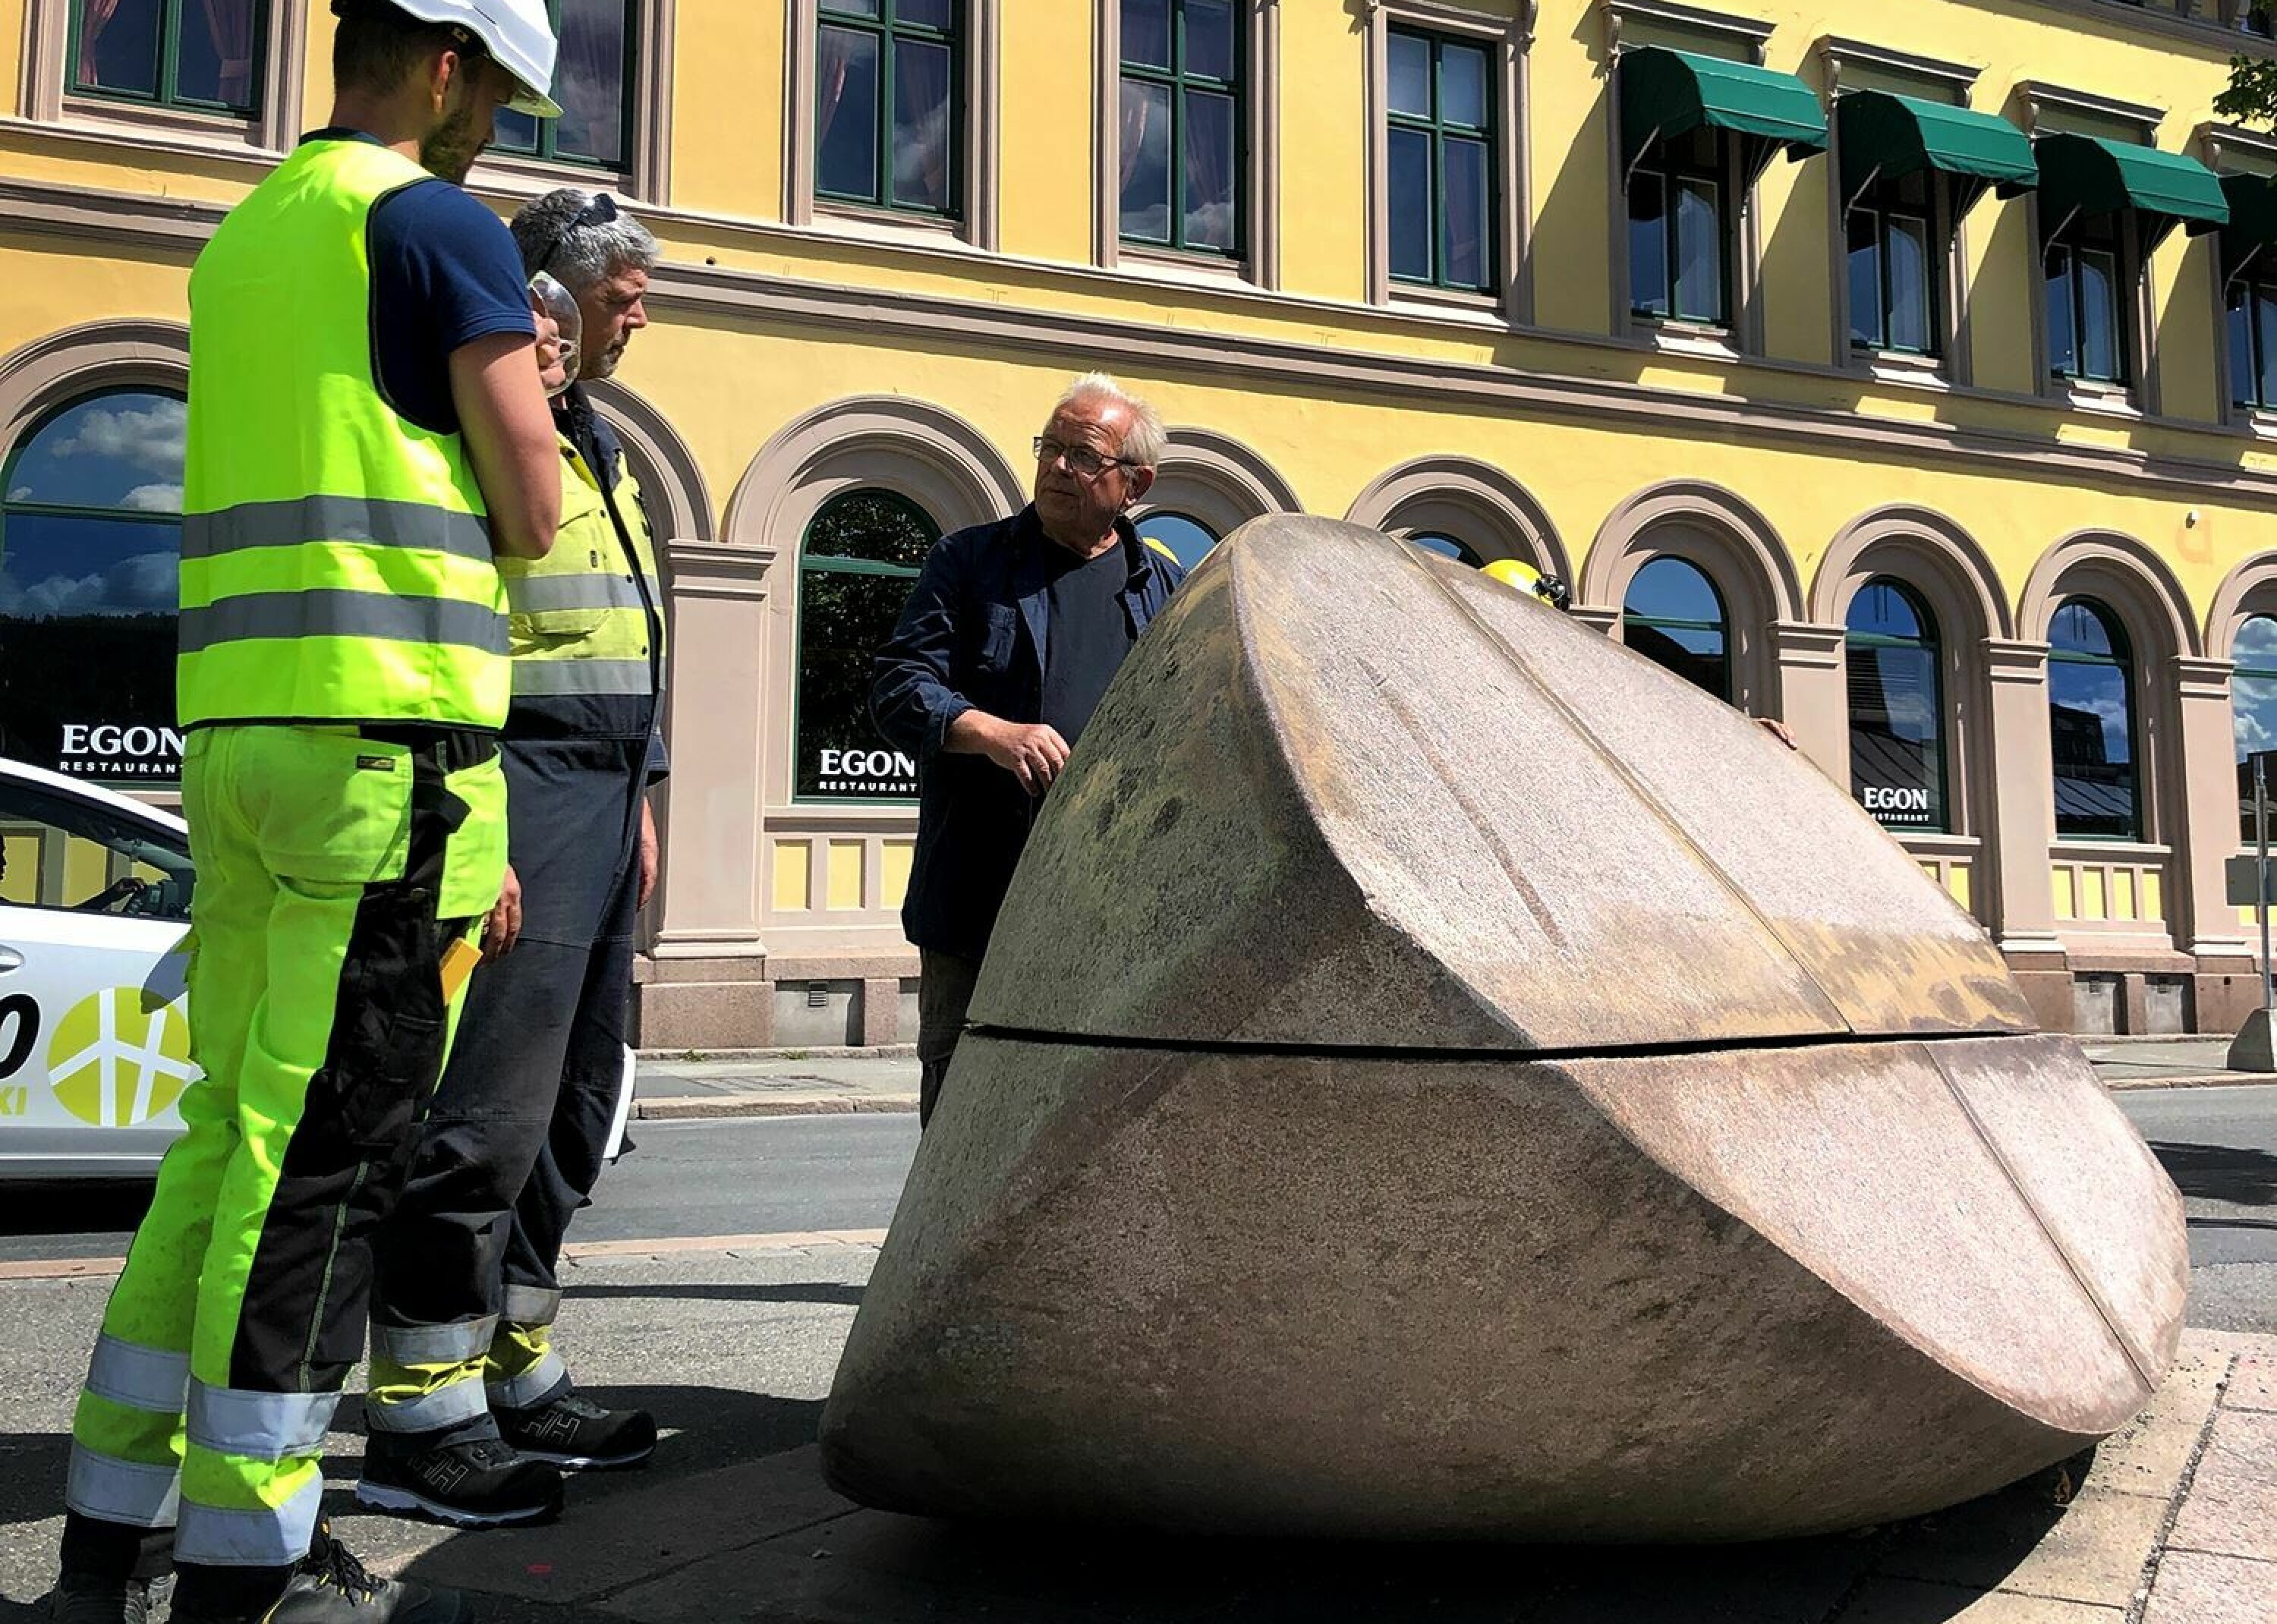 Skulpturen «Båt» er ni tonn tung, og måtte løftes vekk med kran. Kunstneren selv, Kristian Blystad, var tilstede.